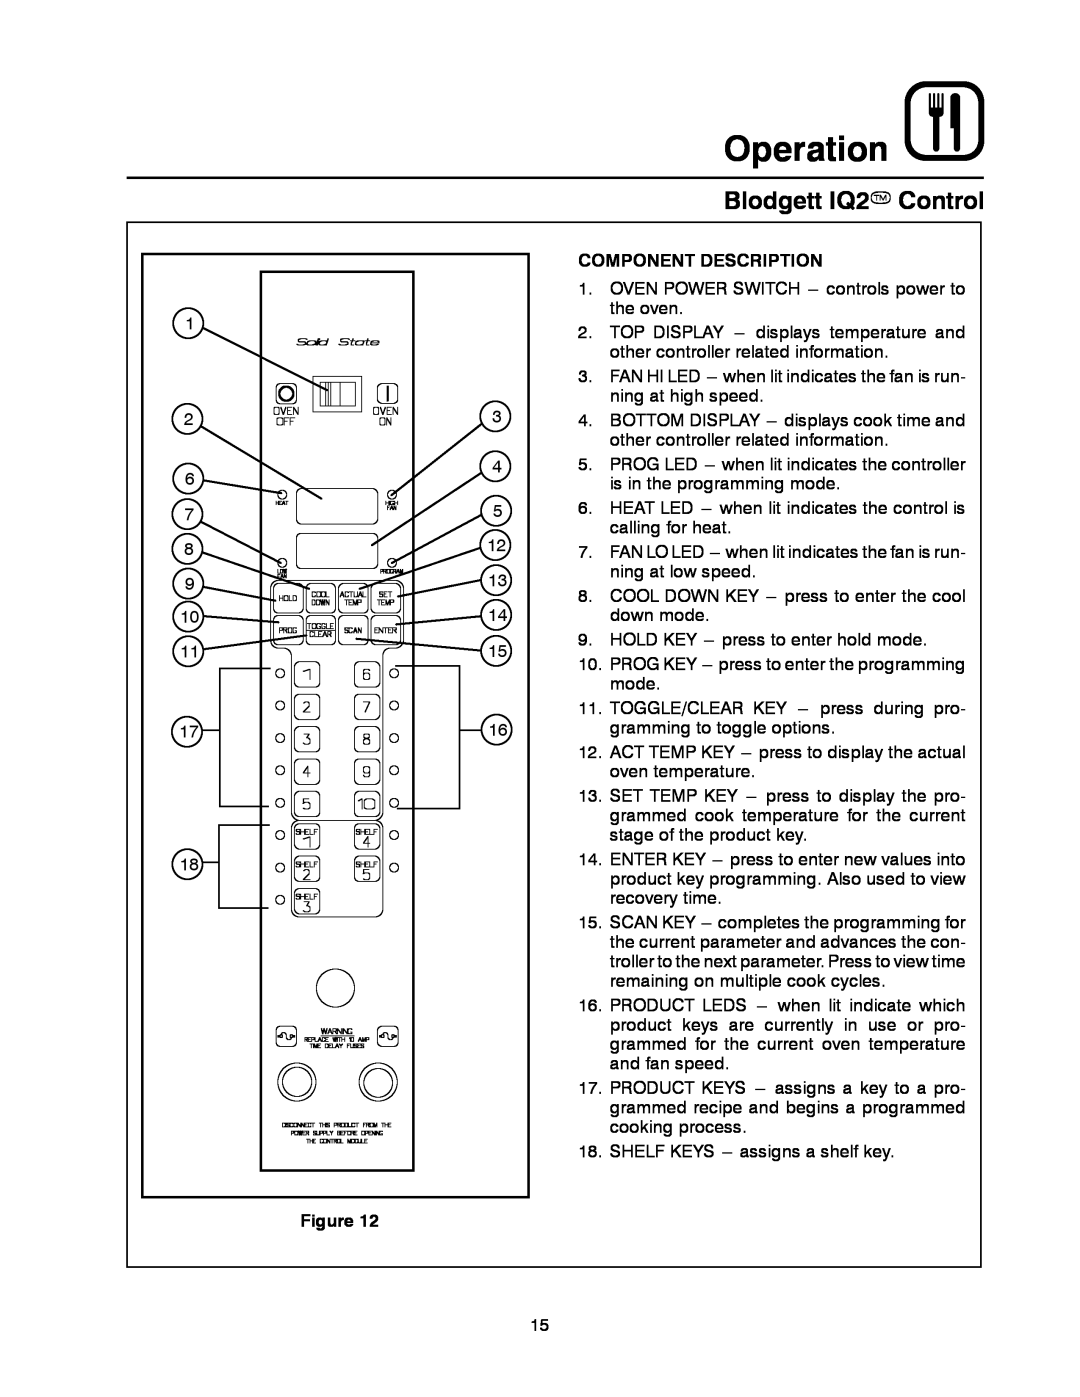 Blodgett MARK V manual Operation, Blodgett IQ2T Control, Component Description 